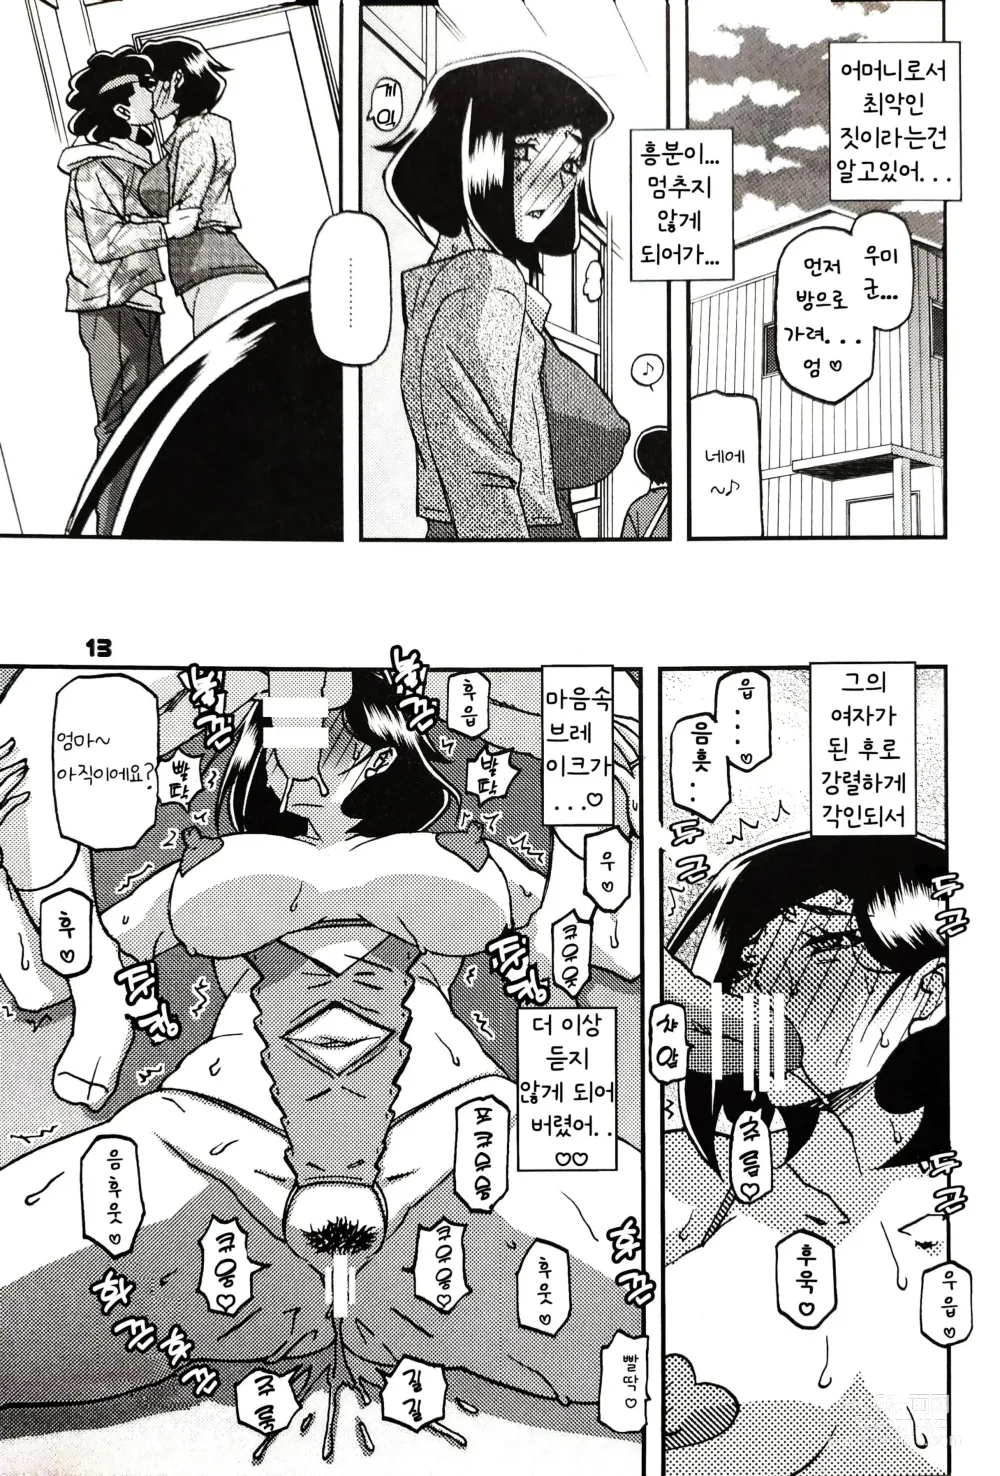 Page 12 of doujinshi Akebi no Mi - Misora AFTER